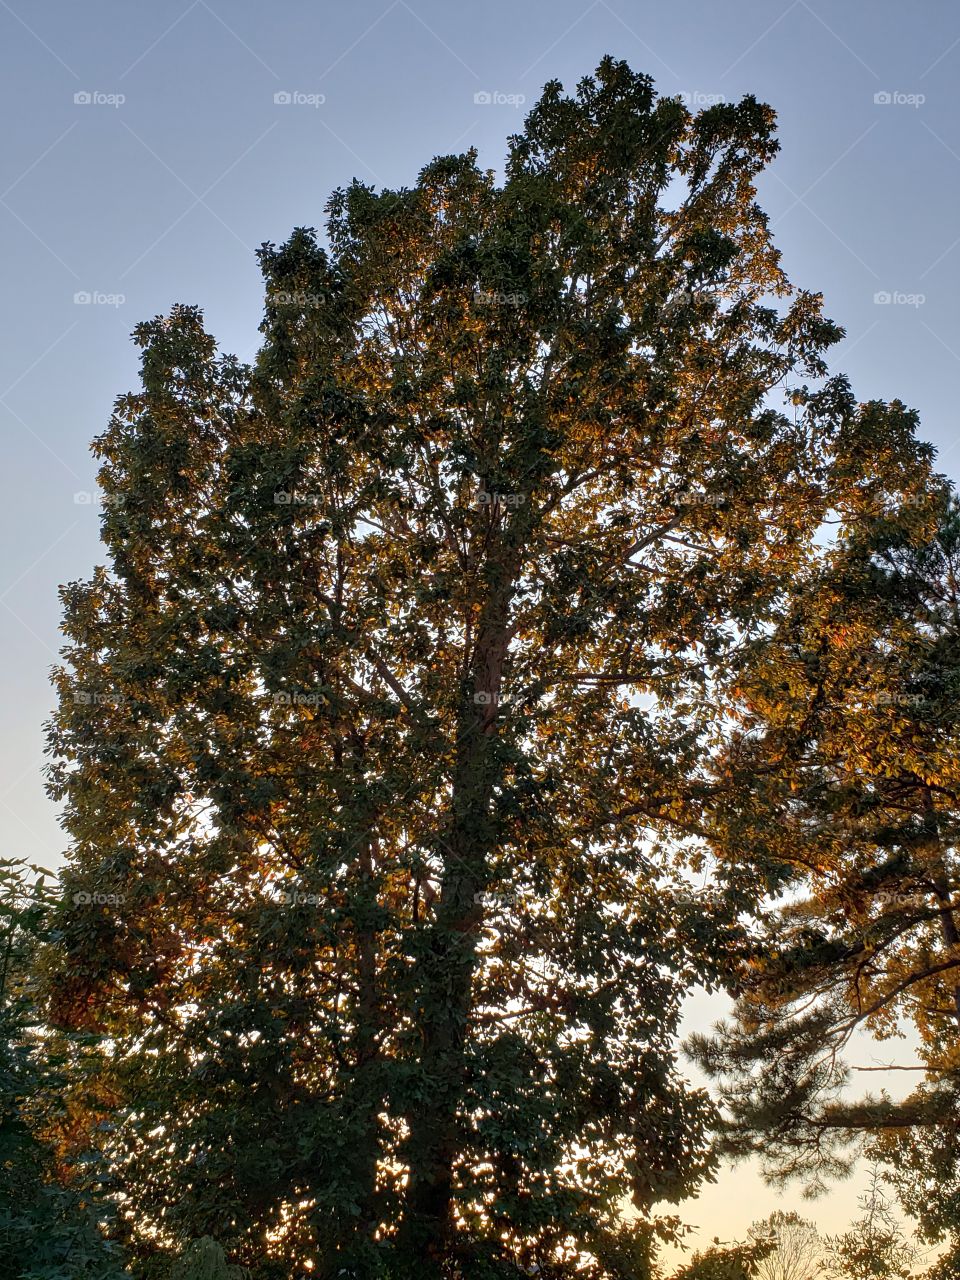 Majestic Oak at sunset